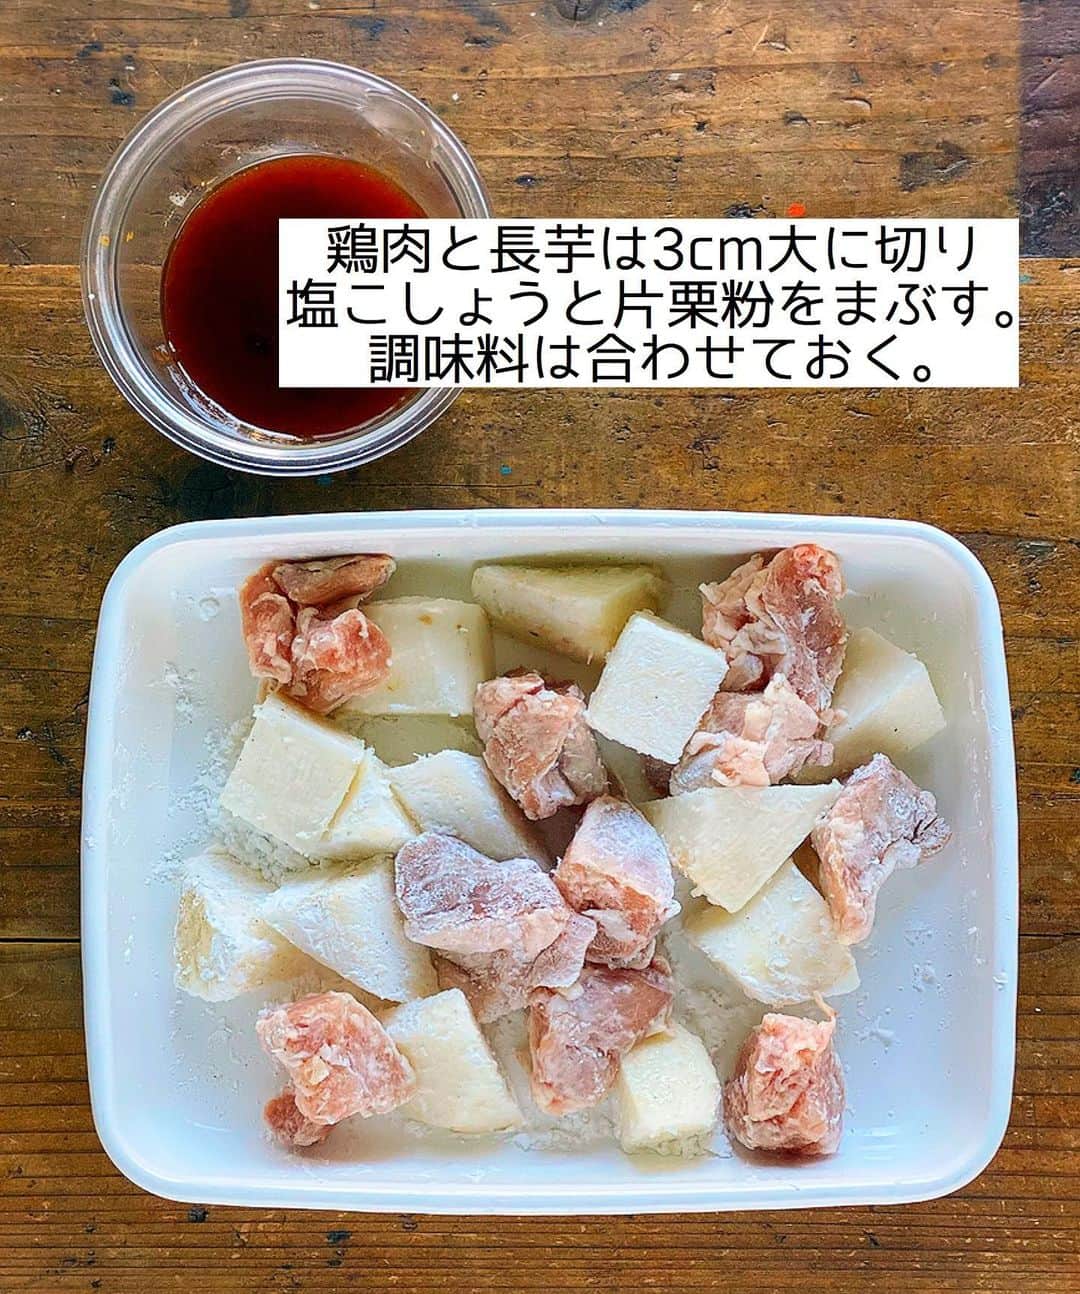 Mizuki【料理ブロガー・簡単レシピ】さんのインスタグラム写真 - (Mizuki【料理ブロガー・簡単レシピ】Instagram)「・﻿ 【#レシピ 】ーーーーーーーーー﻿ ♡長芋入りヤンニョムチキン♡﻿ ーーーーーーーーーーーーーーー﻿ ﻿ ﻿ ﻿ おはようございます(*^^*)﻿ ﻿ 今日ご紹介させていただくのは﻿ \ 長芋入りヤンニョムチキン /﻿ ﻿ カリッと焼けたチキンと﻿ ホクホクの長芋に﻿ 甘辛だれが相性抜群！！﻿ ボリュームたっぷり&﻿ 間違いなしのやみつきおかずです♡﻿ ﻿ 揚げずに作れるので﻿ お気軽にお試し下さいね♩﻿ これ、おすすめですよ〜(*´艸`)﻿ ﻿ ﻿ ﻿ ＿＿＿＿＿＿＿＿＿＿＿＿＿＿＿＿＿＿＿＿﻿ 【2人分】﻿ 鶏もも肉...小1枚(200g)﻿ 長芋...10cm(200g)﻿ 塩こしょう...少々﻿ 片栗粉...適量﻿ サラダ油...大3﻿ ●砂糖・みりん・コチュジャン・ケチャップ...各大1﻿ ●醤油・ごま油...各大1/2﻿ ●にんにくチューブ...3cm﻿ ごま...適量﻿ ﻿ 1.鶏肉と長芋は3cm大に切り、塩こしょうを振って片栗粉をまぶす。●は合わせておく。﻿ 2.フライパンにサラダ油を中火で熱し、鶏肉と長芋を焼く。焼き色が付いたら裏返し、蓋をして弱めの中火で3分蒸し焼きにする。﻿ 3.余分な油を拭き取り、●を加えて煮からめ、仕上げにごまを振る。﻿ ￣￣￣￣￣￣￣￣￣￣￣￣￣￣￣￣￣￣￣￣﻿ ﻿ ﻿ ﻿ 《ポイント》﻿ ♦︎見た目ほど辛くはありません♩﻿ ♦︎鶏肉と長芋はしっかり焼き色を付けてから裏返して下さい♩﻿ ♦︎鶏肉だけ、長芋だけで、それぞれ量を増やして作っても◎﻿ ♦︎26cmのフライパンを使用しています♩﻿ ﻿ ﻿ ﻿ ﻿ ﻿ ﻿ ﻿ ﻿ 📕新刊発売中📕﻿ 【ラクしておいしい！#1品晩ごはん 】﻿ ￣￣￣￣￣￣￣￣￣￣￣￣￣￣￣￣￣﻿ 私たちだってヘトヘトな日がある•••﻿ 毎日何品も作っていられない•••﻿ もうごはんに悩みたくない😢﻿ そんな時、1品ごはんはいかがでしょう？﻿ というご提案です✨﻿ ﻿ 【1品ごはん】は﻿ 副菜いらずで全てがシンプル！﻿ ￣￣￣￣￣￣￣￣￣￣￣￣￣￣￣￣￣￣﻿ 一品つくるだけでいいから﻿ 献立を考えなくてよし！﻿ ￣￣￣￣￣￣￣￣￣￣￣￣￣￣￣￣￣￣﻿ 悩まない、疲れない、﻿ 気力や時間がなくてもなんとかなる！﻿ ￣￣￣￣￣￣￣￣￣￣￣￣￣￣￣￣￣￣﻿ そんな頼りになる﻿ 便利なお助けごはんです☺️💕﻿ (ハイライトに🔗貼っています✨)﻿ ￣￣￣￣￣￣￣￣￣￣￣￣￣￣￣￣￣﻿ ﻿ ﻿ ﻿ ﻿ ﻿ ⭐️発売中⭐️﻿ ＿＿＿＿＿＿＿＿＿＿＿＿＿＿＿＿＿＿﻿ しんどくない献立、考えました♩﻿ \15分でいただきます/﻿ 📕#Mizukiの2品献立 📕﻿ ﻿ 和食をもっとカジュアルに♩﻿ \毎日のごはんがラクになる/﻿ 📘#Mizukiの今どき和食 📘﻿ ﻿ ホケミレシピの決定版♩﻿ \はじめてでも失敗しない/﻿ 📙ホットケーキミックスのお菓子 📙﻿ ﻿ NHKまる得マガジンテキスト☆﻿ ホットケーキミックスで﻿ 📗絶品おやつ&意外なランチ📗﻿ ￣￣￣￣￣￣￣￣￣￣￣￣￣￣￣￣￣￣﻿ ﻿ ﻿ ﻿ ＿＿＿＿＿＿＿＿＿＿＿＿＿＿＿＿＿＿﻿ レシピを作って下さった際や﻿ レシピ本についてのご投稿には﻿ タグ付け( @mizuki_31cafe )して﻿ お知らせいただけると嬉しいです😊💕﻿ ￣￣￣￣￣￣￣￣￣￣￣￣￣￣￣￣￣￣﻿ ﻿ ﻿ ﻿ ﻿ #ヤンニョムチキン#鶏肉#長芋#韓国料理#甘辛#Mizuki#簡単レシピ#時短レシピ#節約レシピ#料理#フーディーテーブル#マカロニメイト#おうちごはん#デリスタグラマー#料理好きな人と繋がりたい#おうちごはんlover#写真好きな人と繋がりたい#foodpic#cooking#recipe#lin_stagrammer#foodporn#yummy#f52grams#長芋入りヤンニョムチキンm」1月20日 7時03分 - mizuki_31cafe